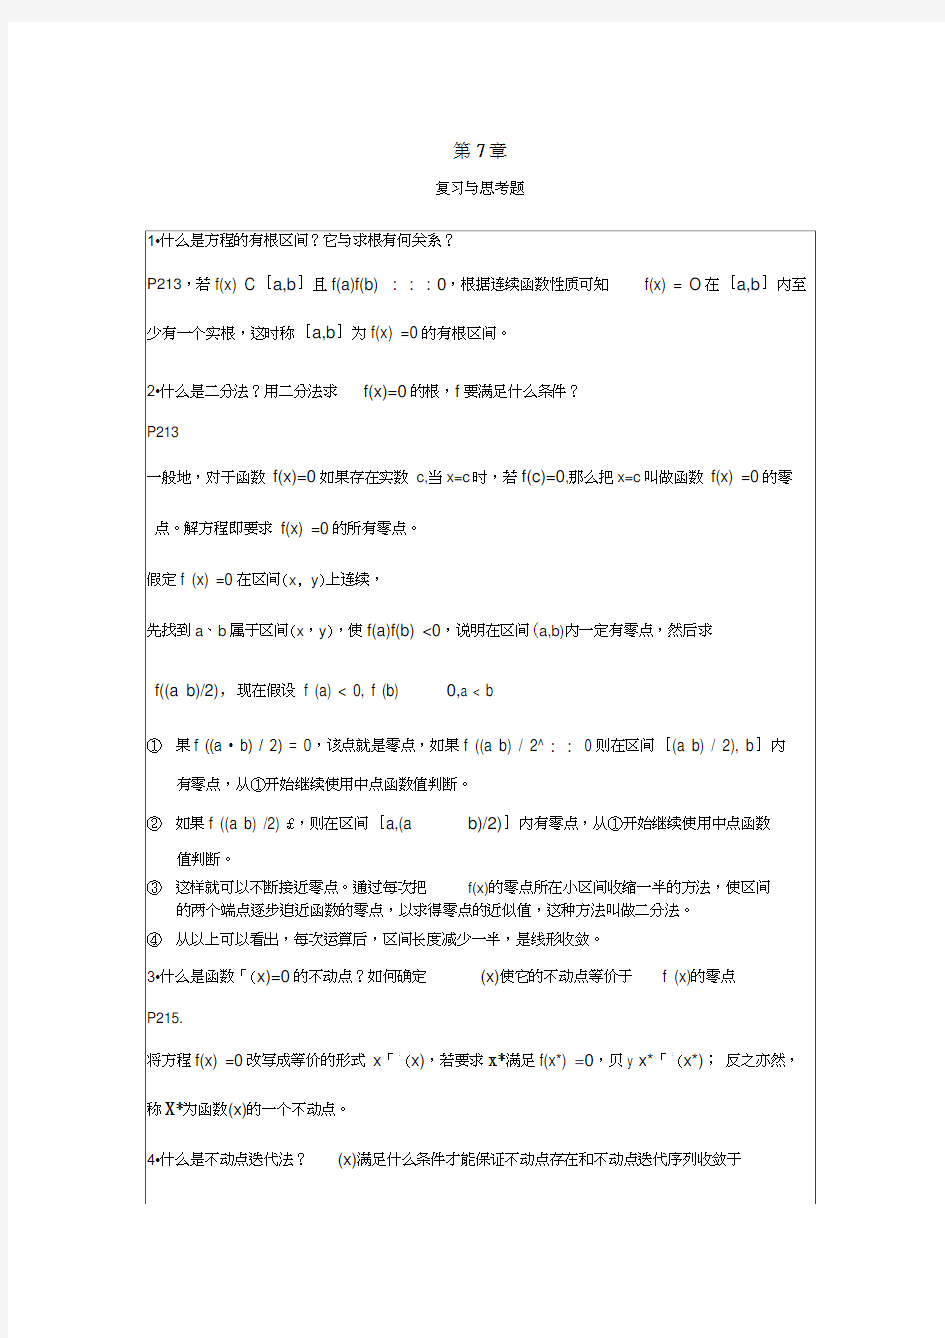 李庆扬-数值分析第五版第7章习题答案(0824)汇编